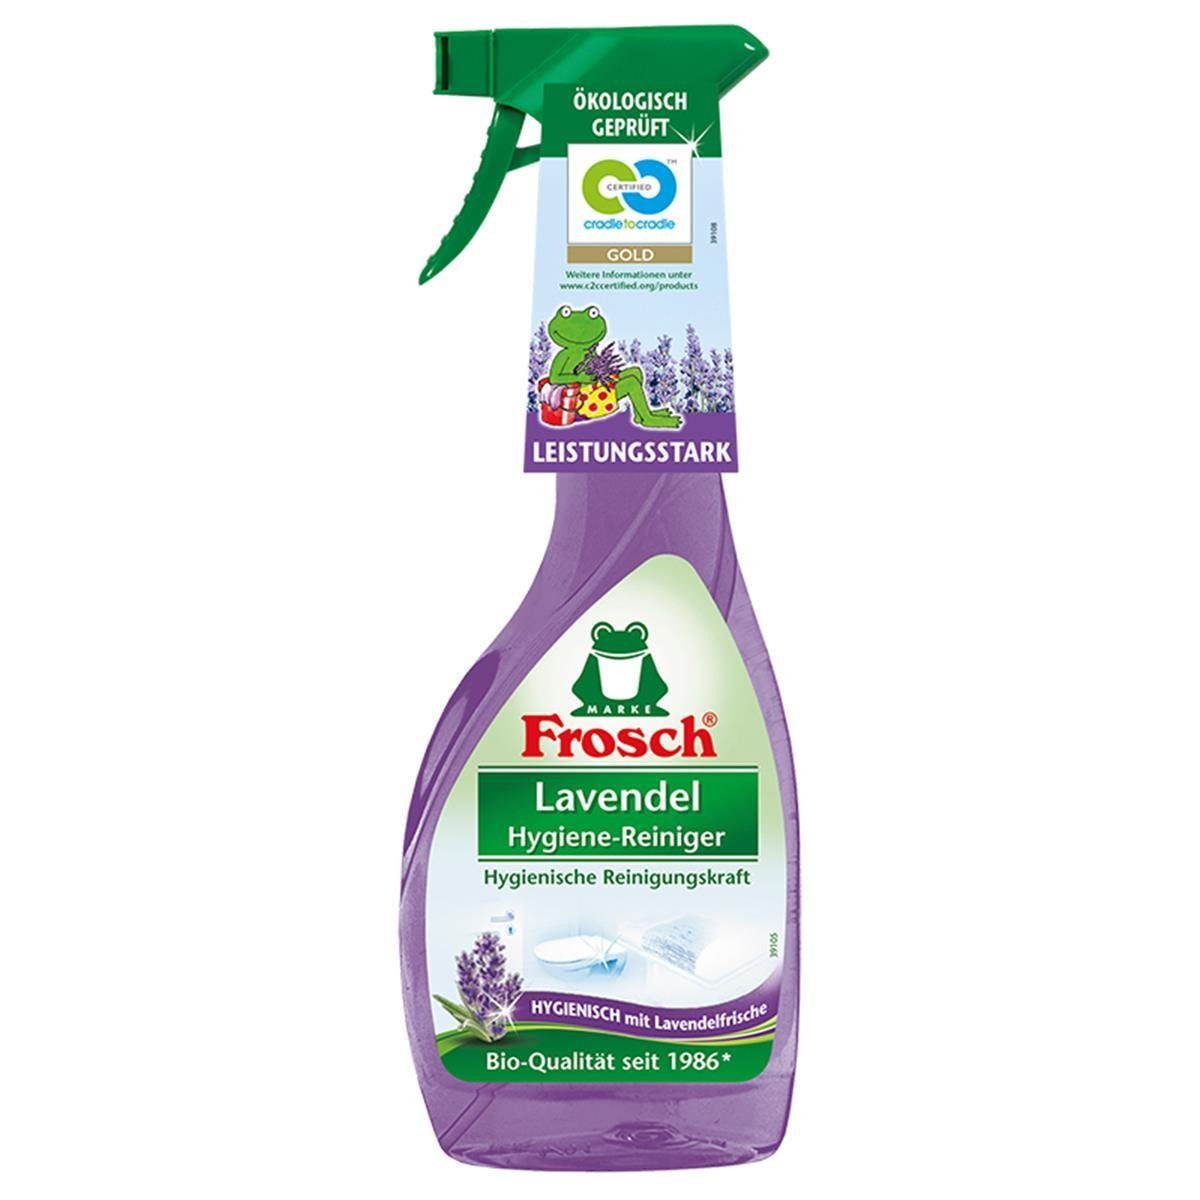 FROSCH 8x Frosch Lavendel ml Sprühflasche Spezialwaschmittel 500 Hygiene-Reiniger